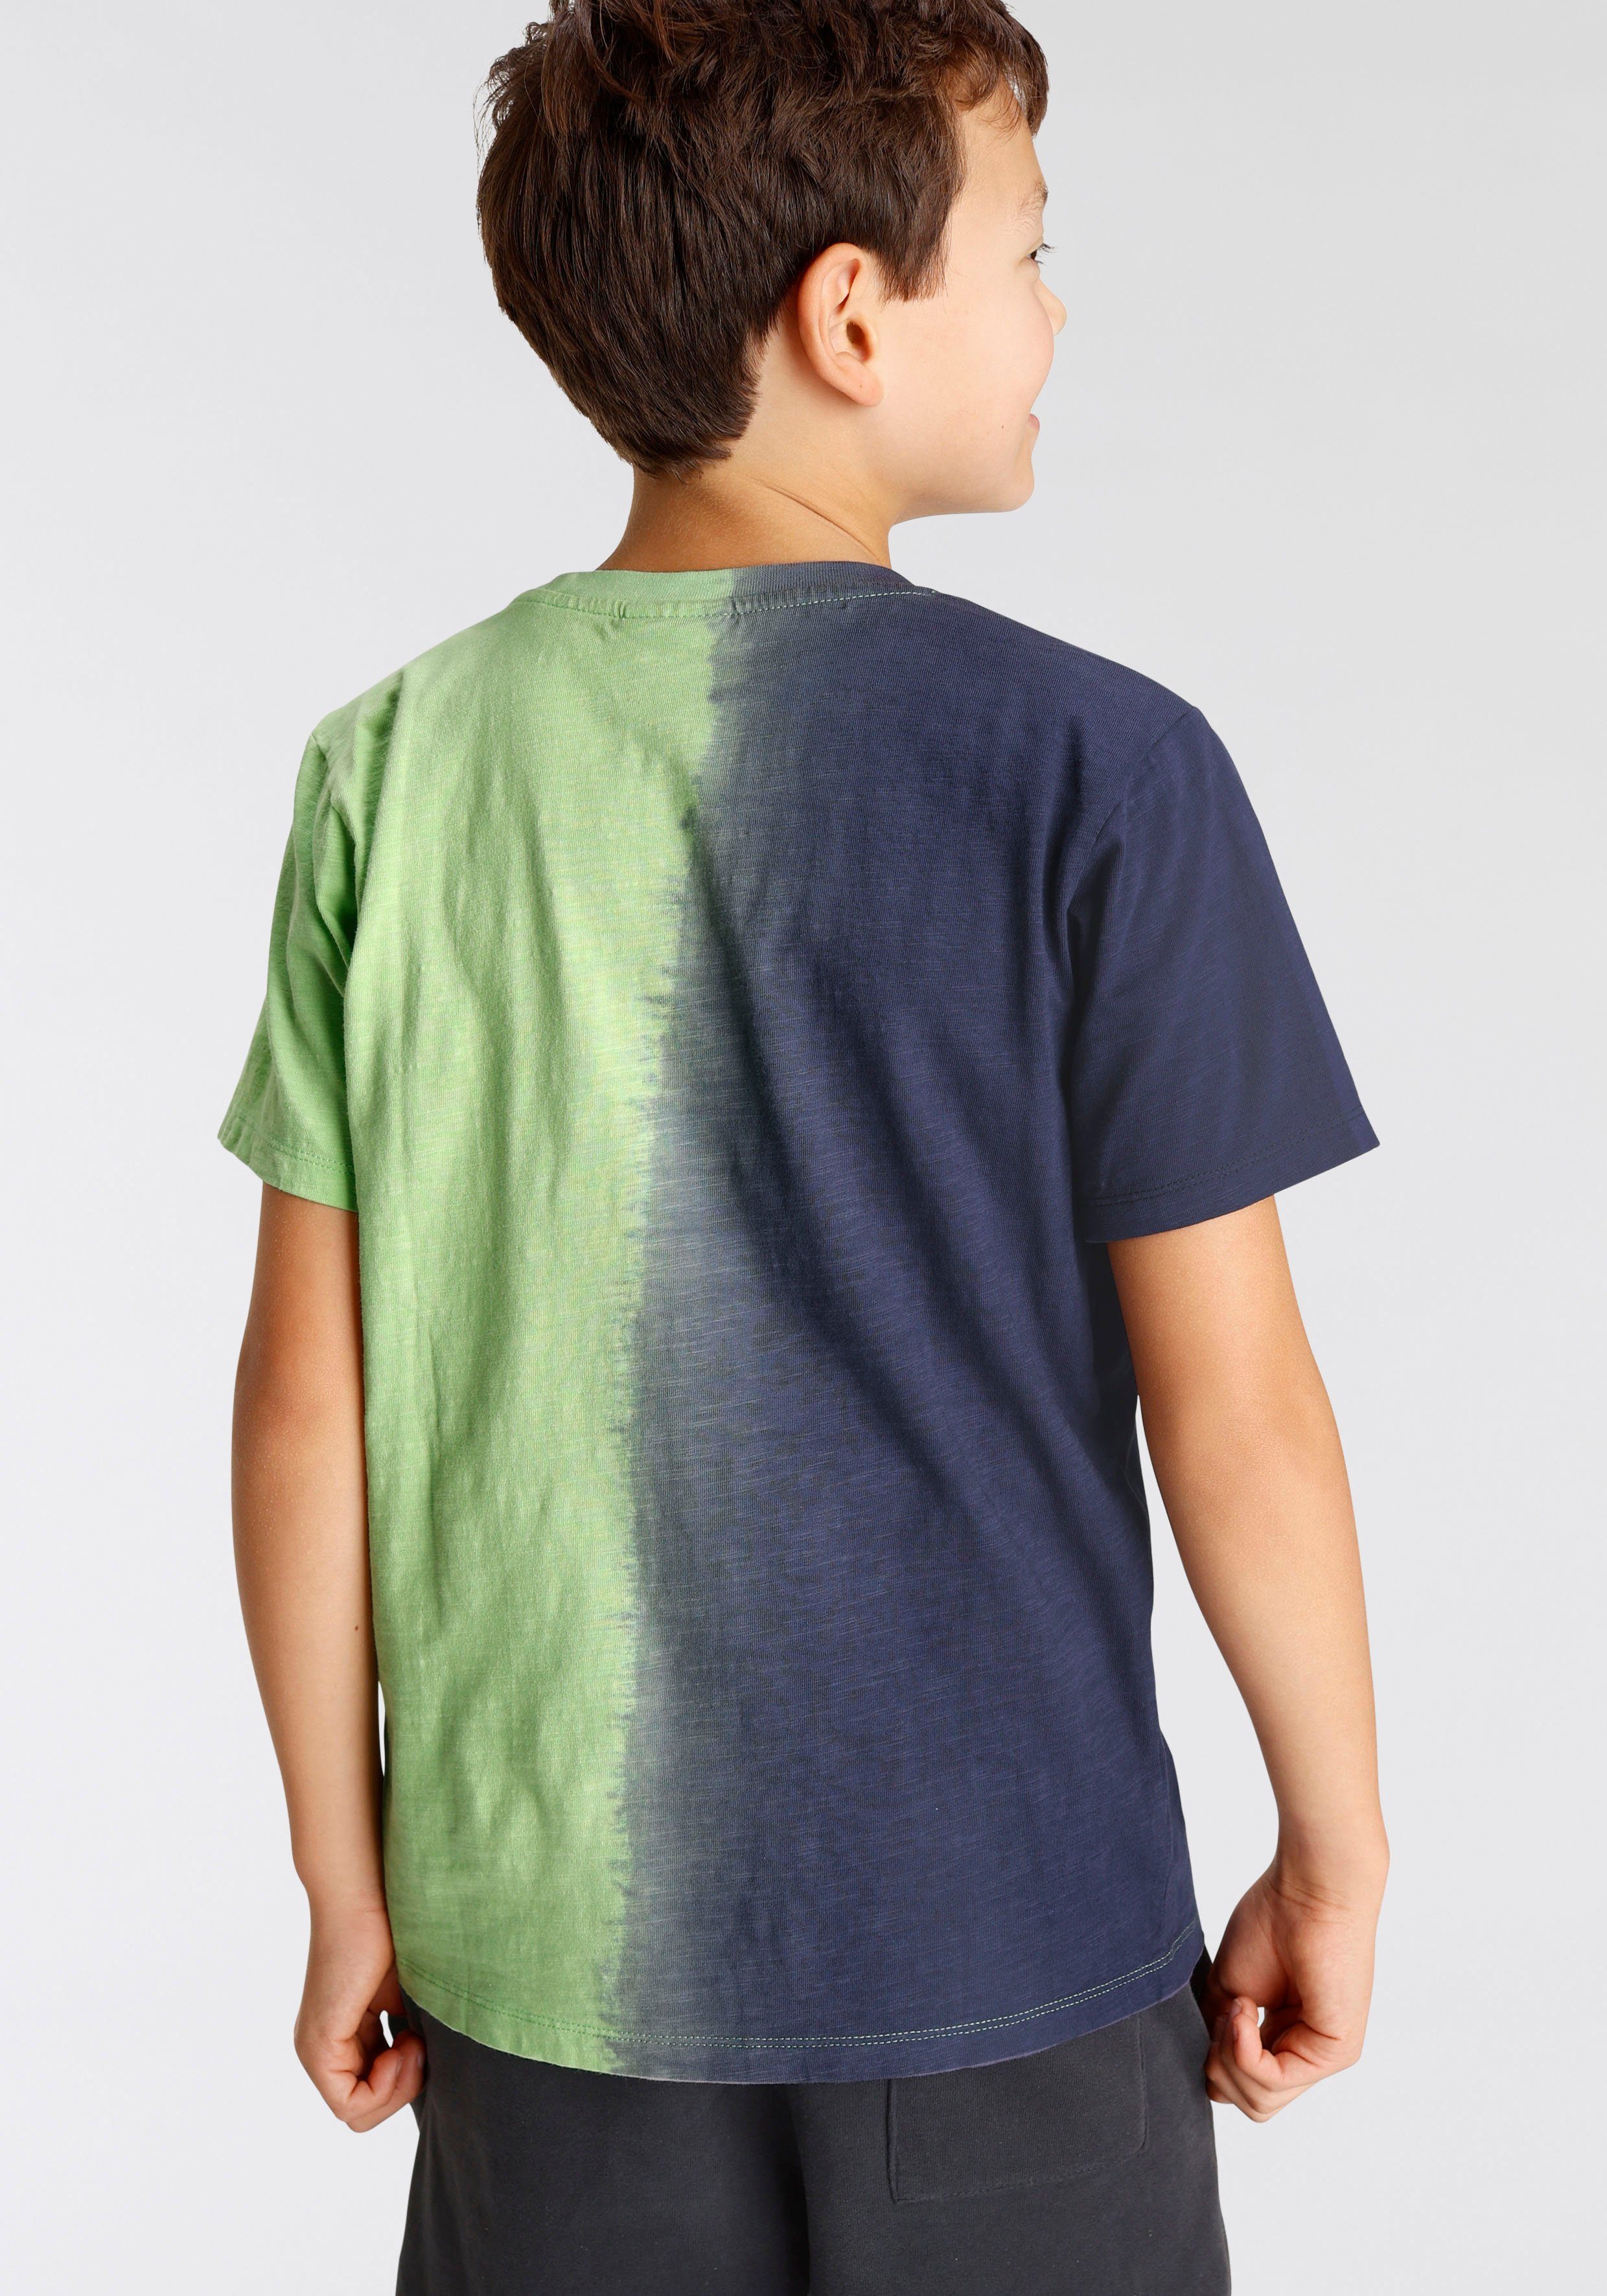 mit Chiemsee Farbverlauf T-Shirt vertikalem Farbverlauf